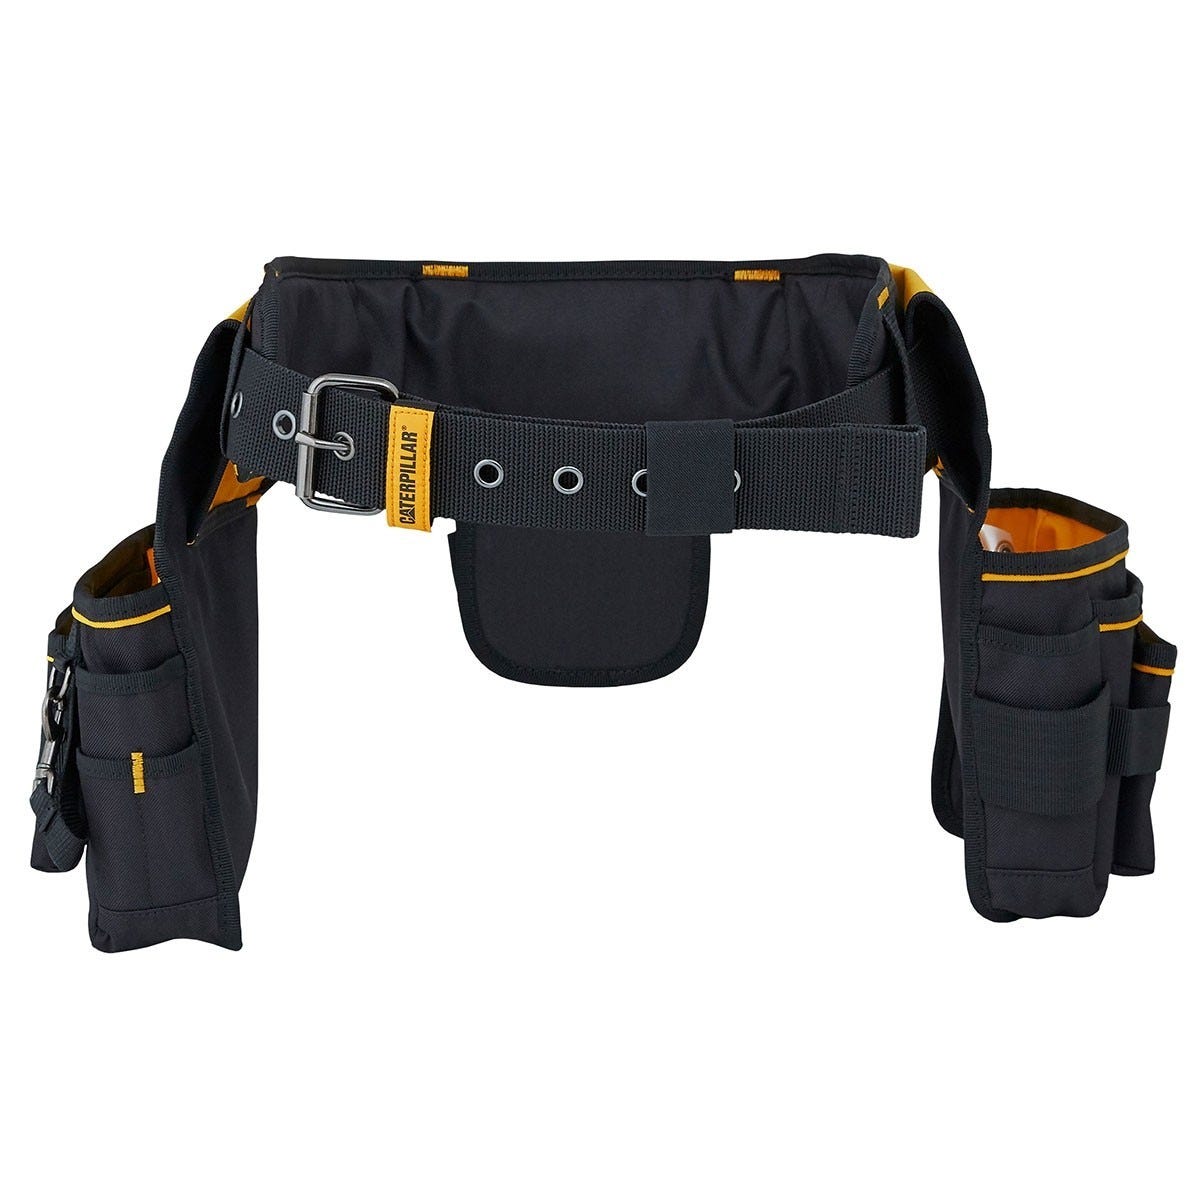 Porte outils professionnel ceinture bricolage Caterpillar Sangle rembourée 3 poches Taille réglable 2